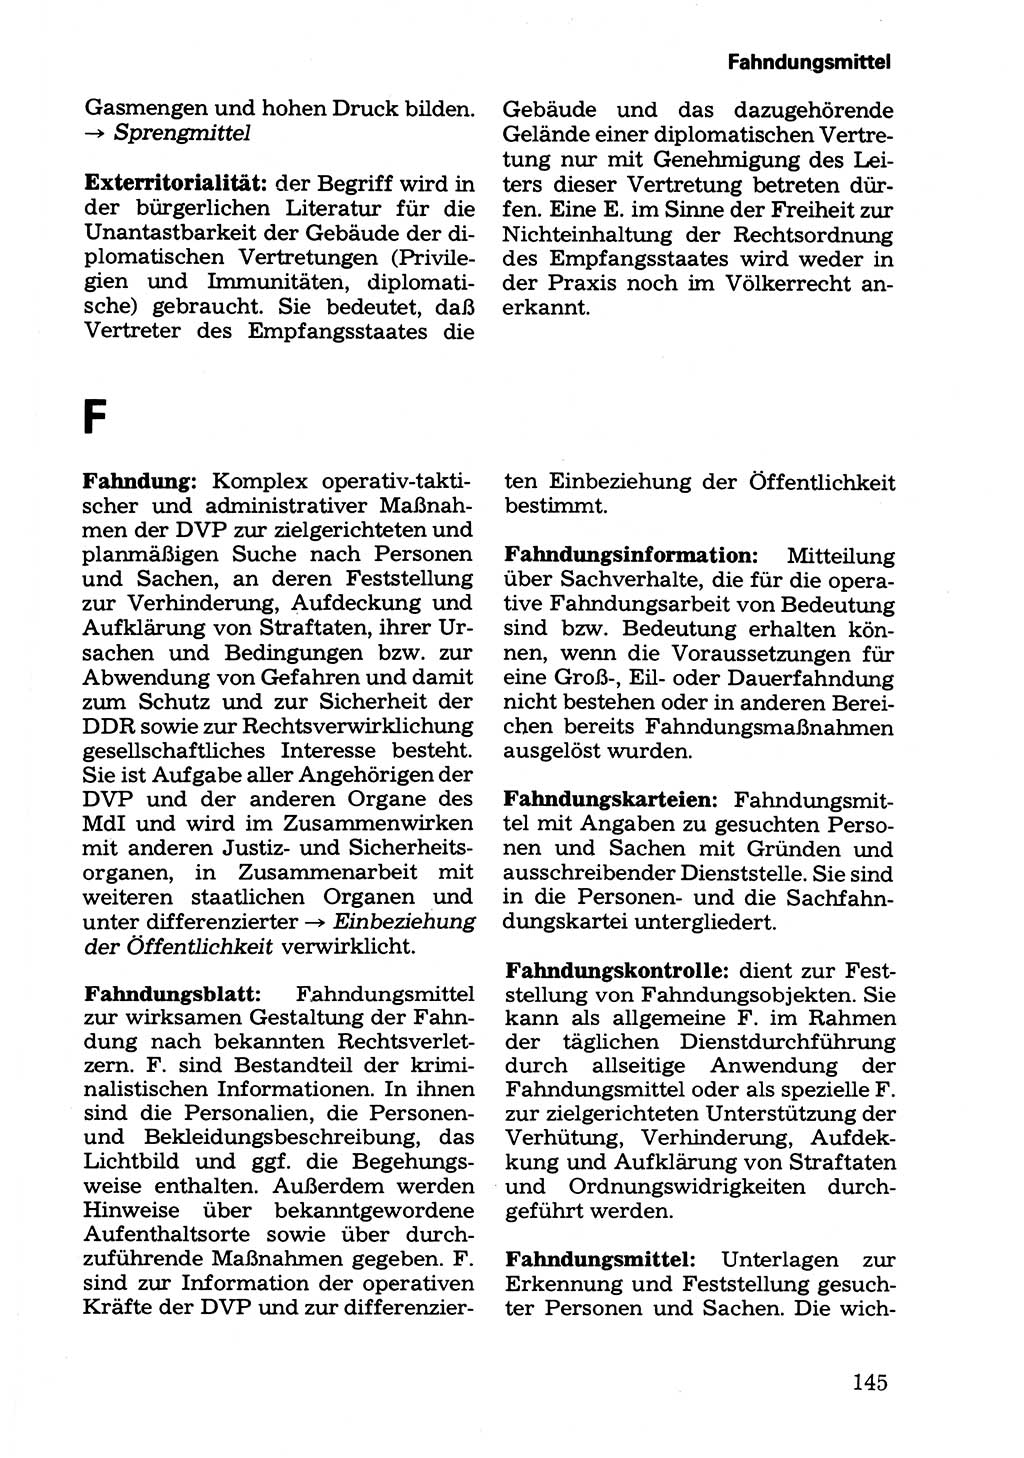 Wörterbuch der sozialistischen Kriminalistik [Deutsche Demokratische Republik (DDR)] 1981, Seite 145 (Wb. soz. Krim. DDR 1981, S. 145)